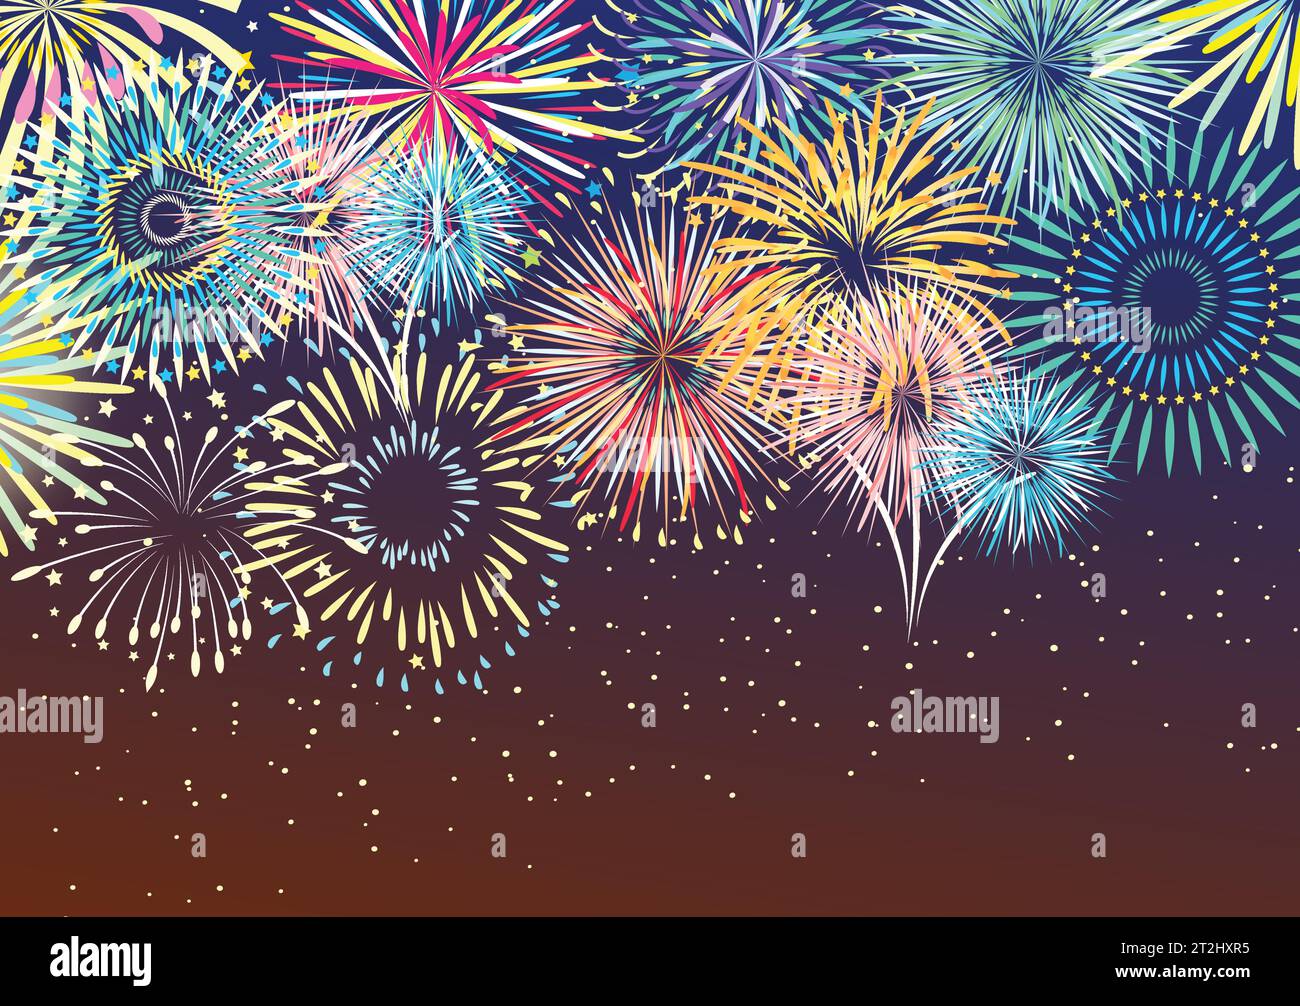 Feu d'artifice coloré festif éclate dans diverses formes abstraites étincelantes à la nuit ciel illustration vectorielle plate de fond Illustration de Vecteur